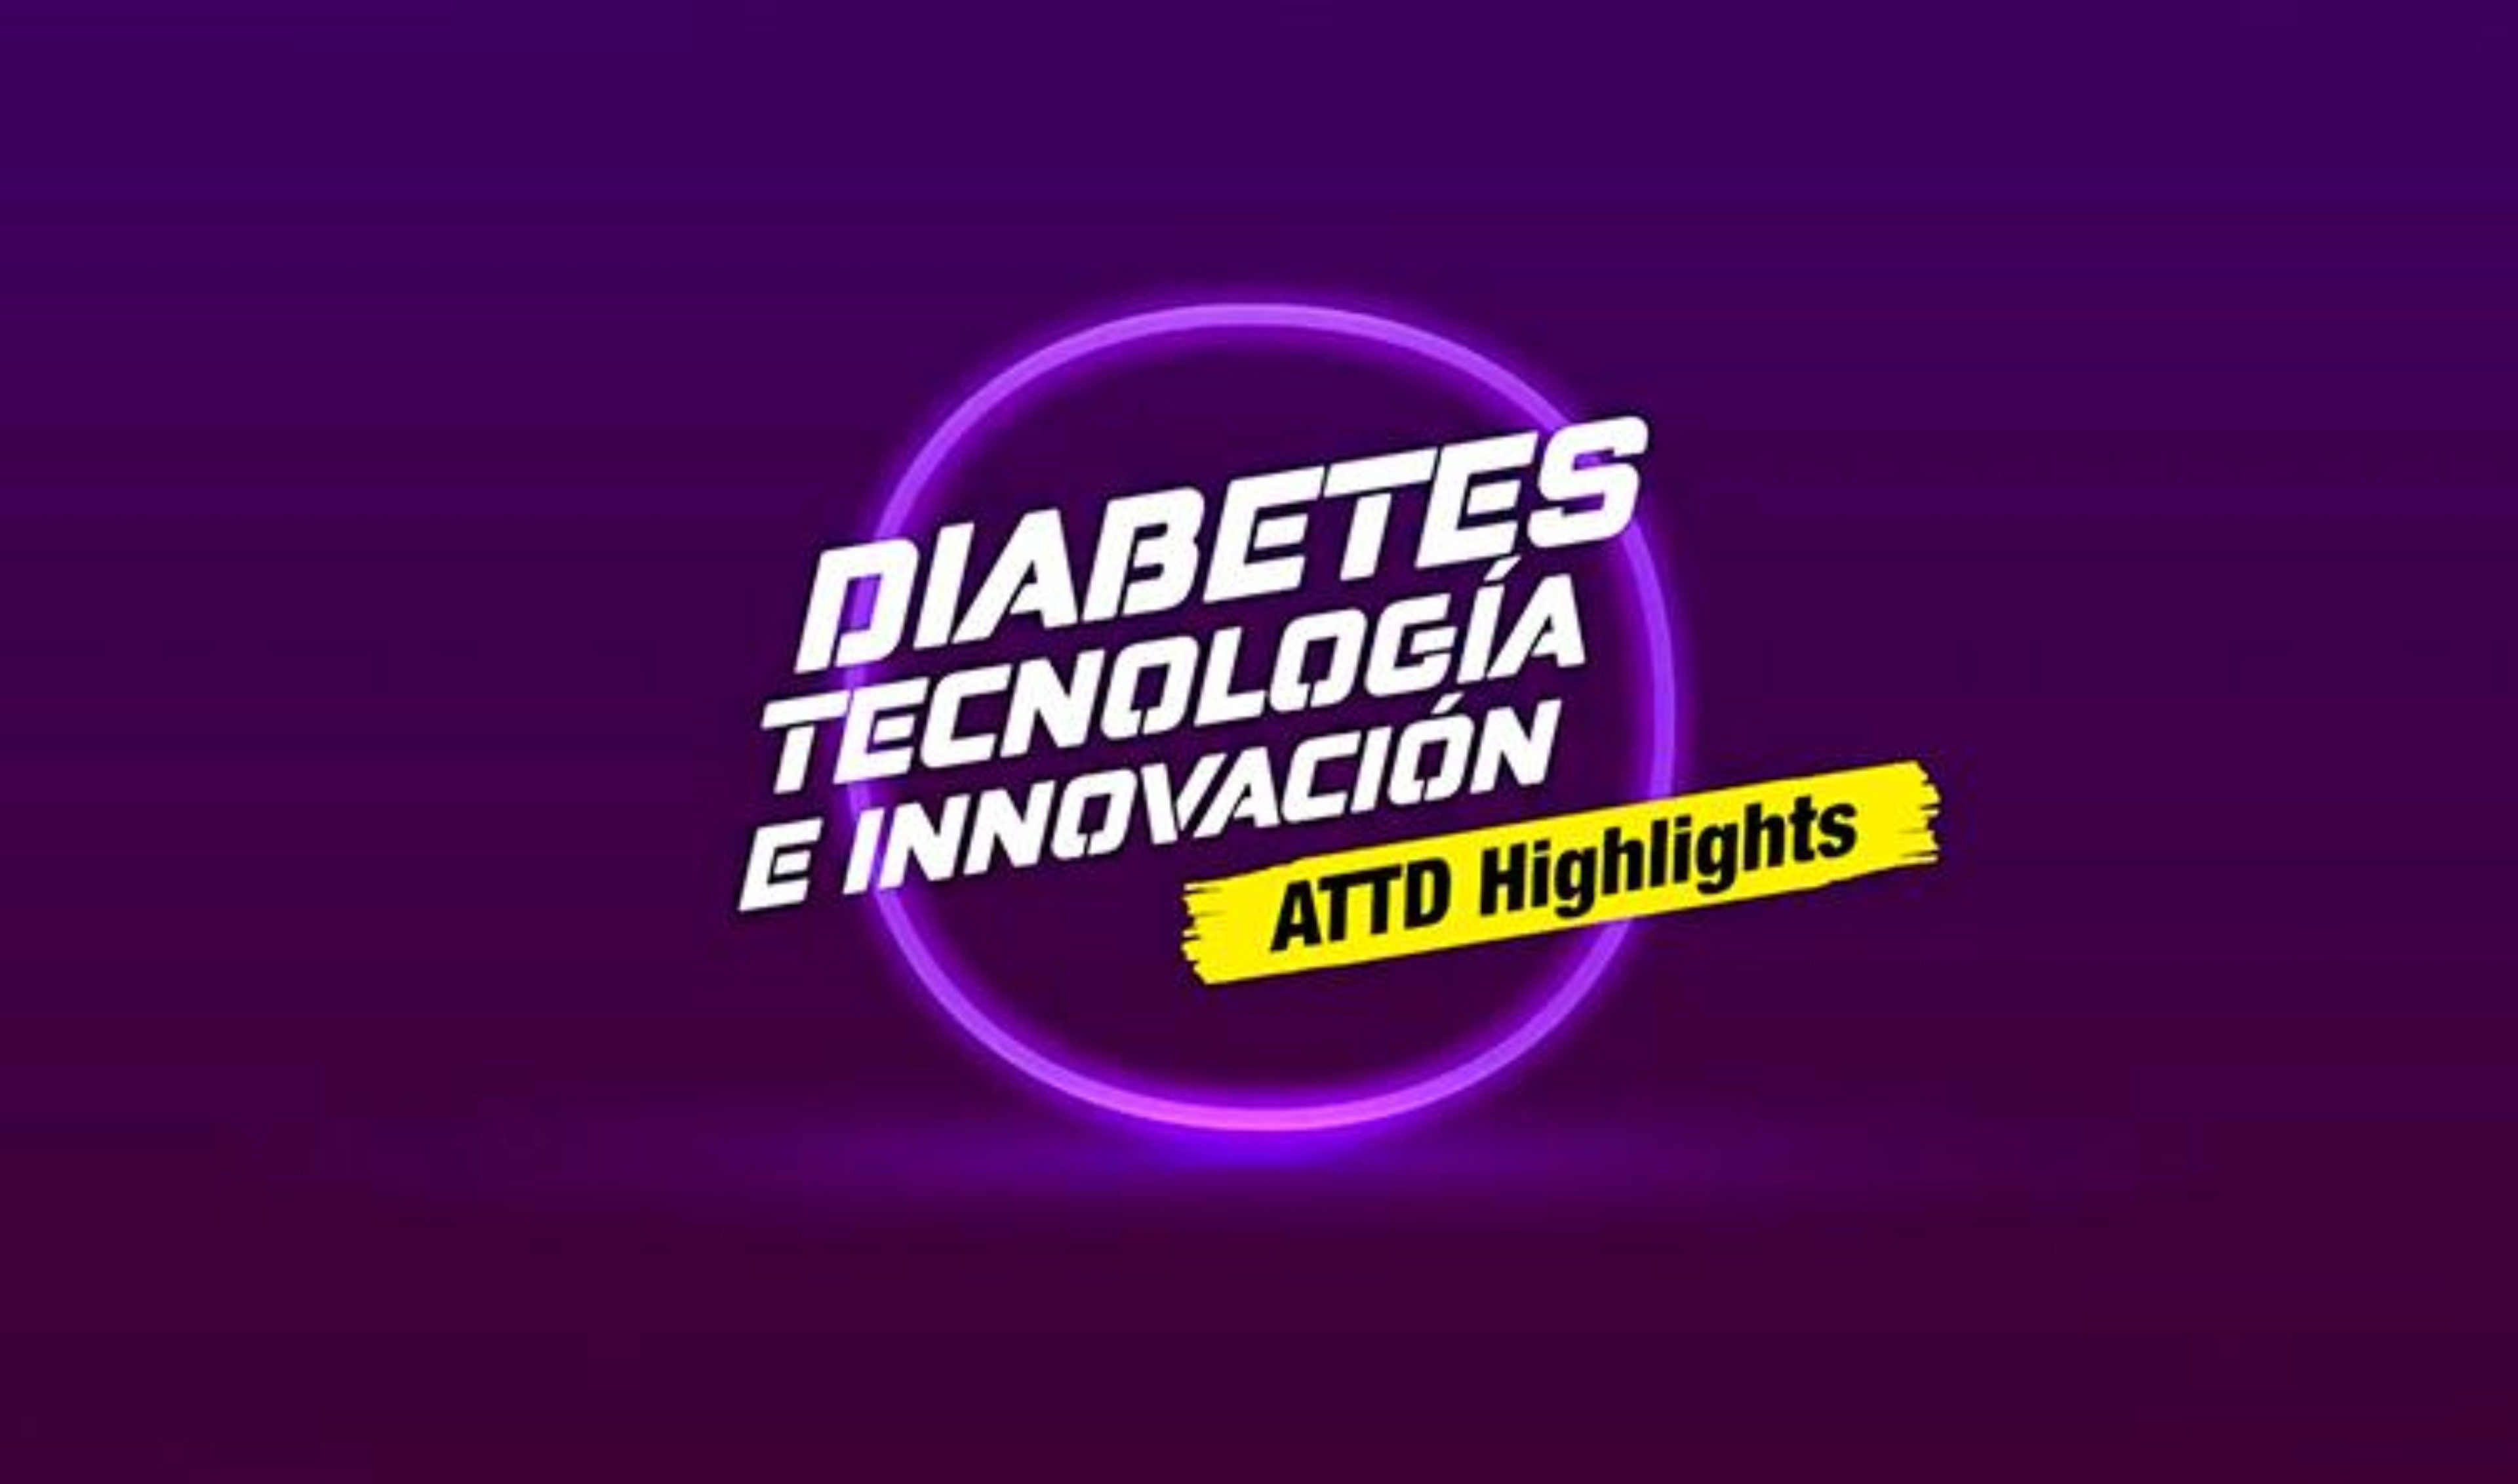 ATTD Highlights 2022: Diabetes, tecnología e innovación